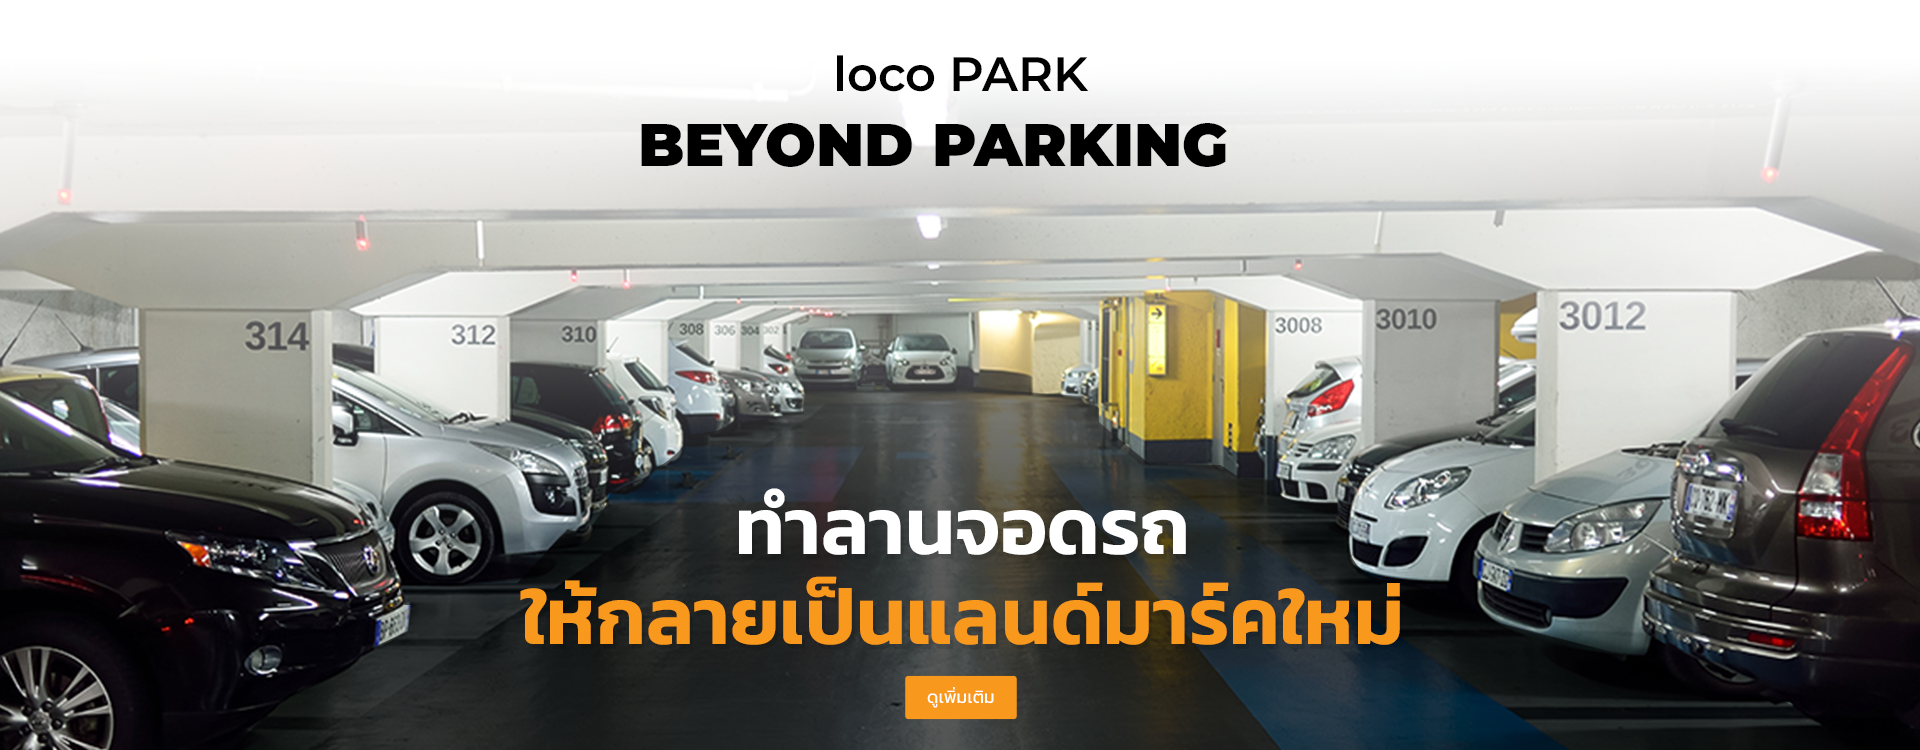 Loco Park บริการ ที่จอดรถ 24 ชม. กรุงเทพ นนทบุรี สมุทรปราการ  จอดรถ รายเดือน / ชั่วโมง เปลี่ยนที่จอดรถ ให้เป็นมากกว่าที่จอด